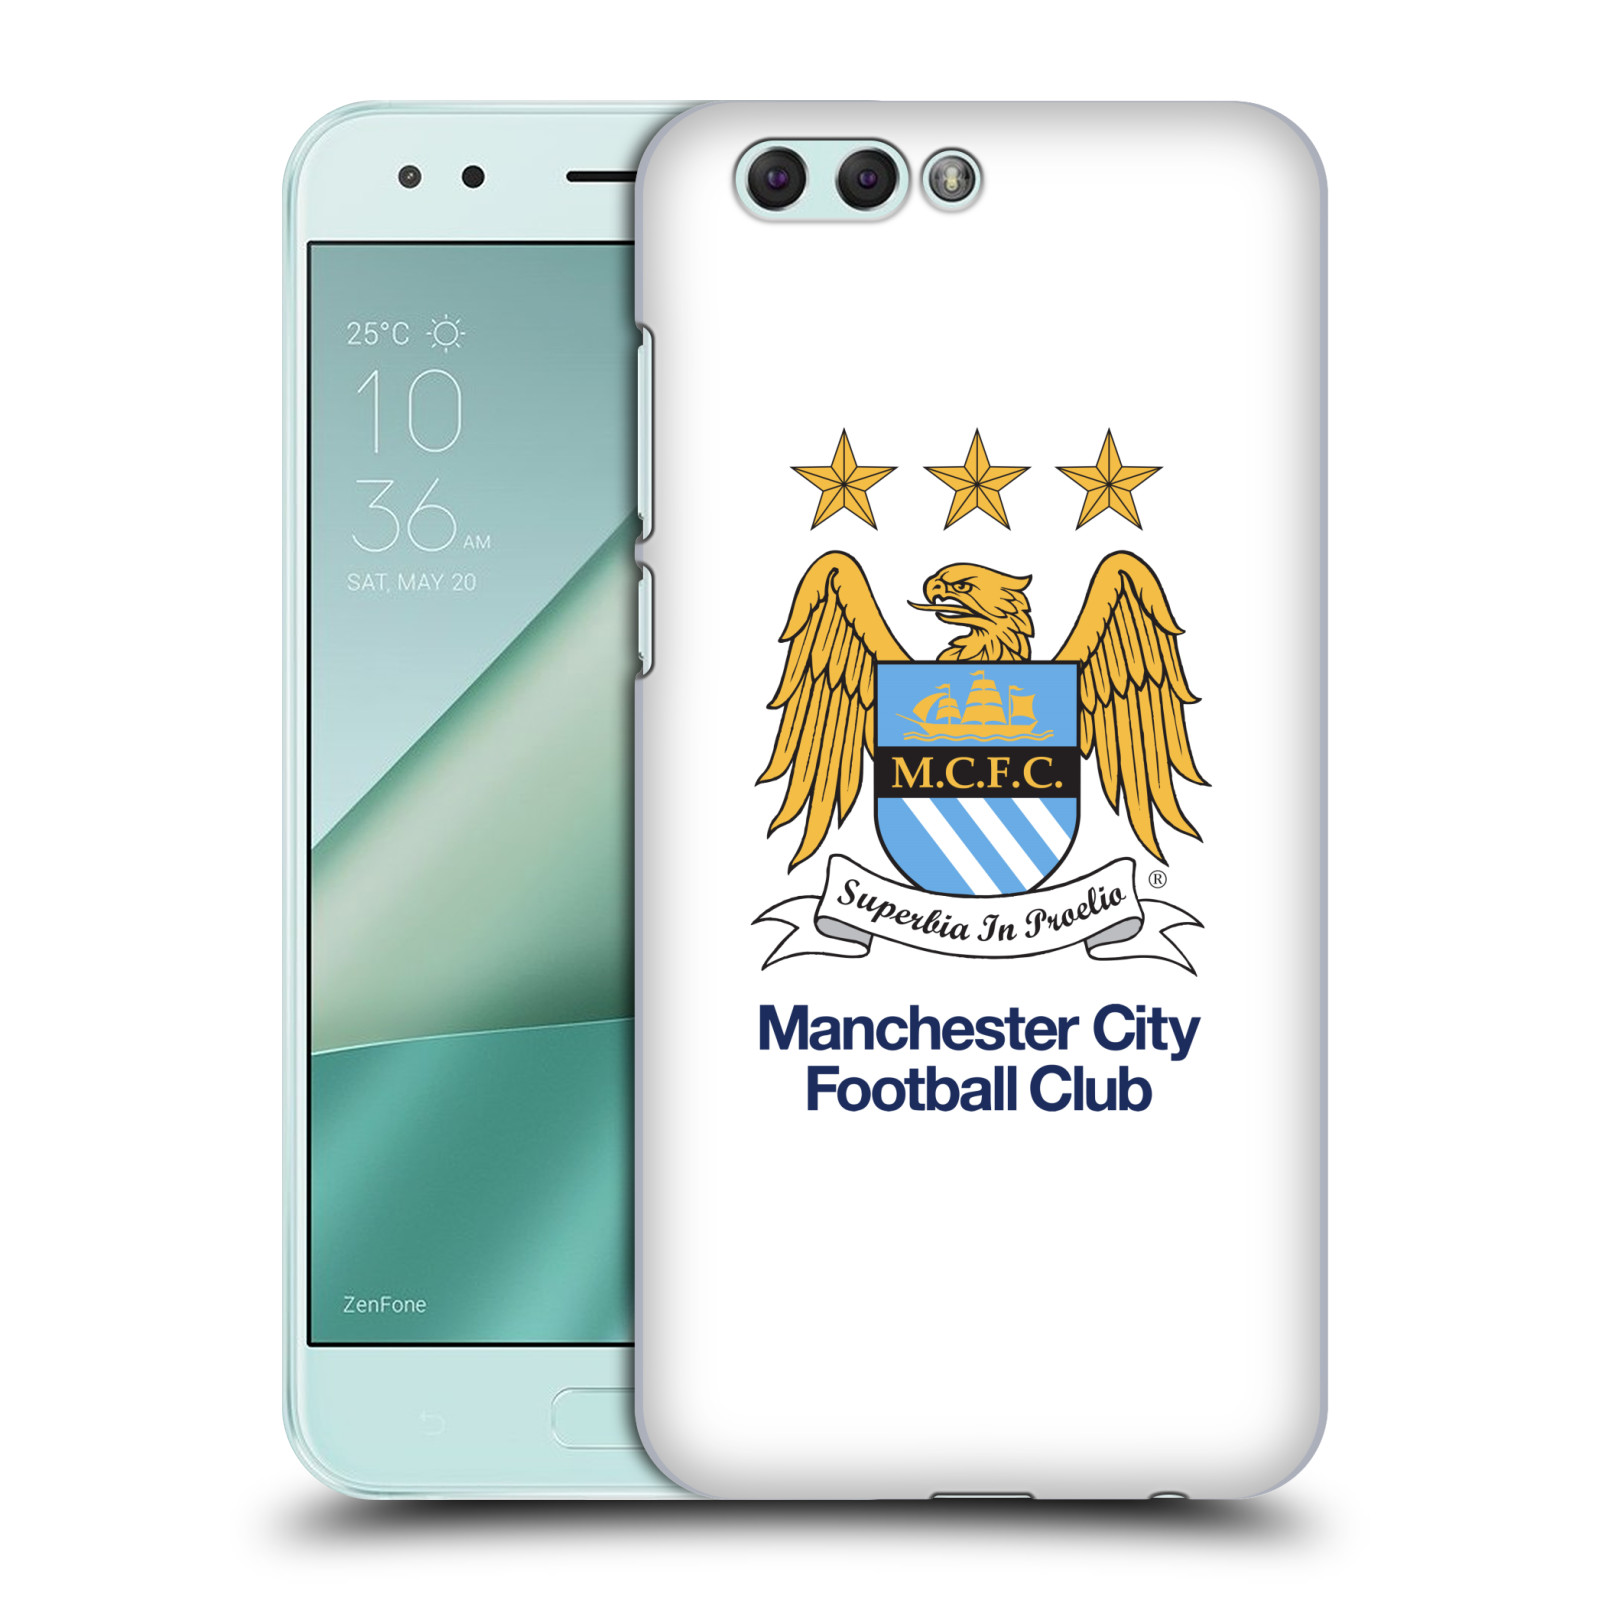 HEAD CASE plastový obal na mobil Asus Zenfone 4 ZE554KL Fotbalový klub Manchester City bílé pozadí velký znak pták